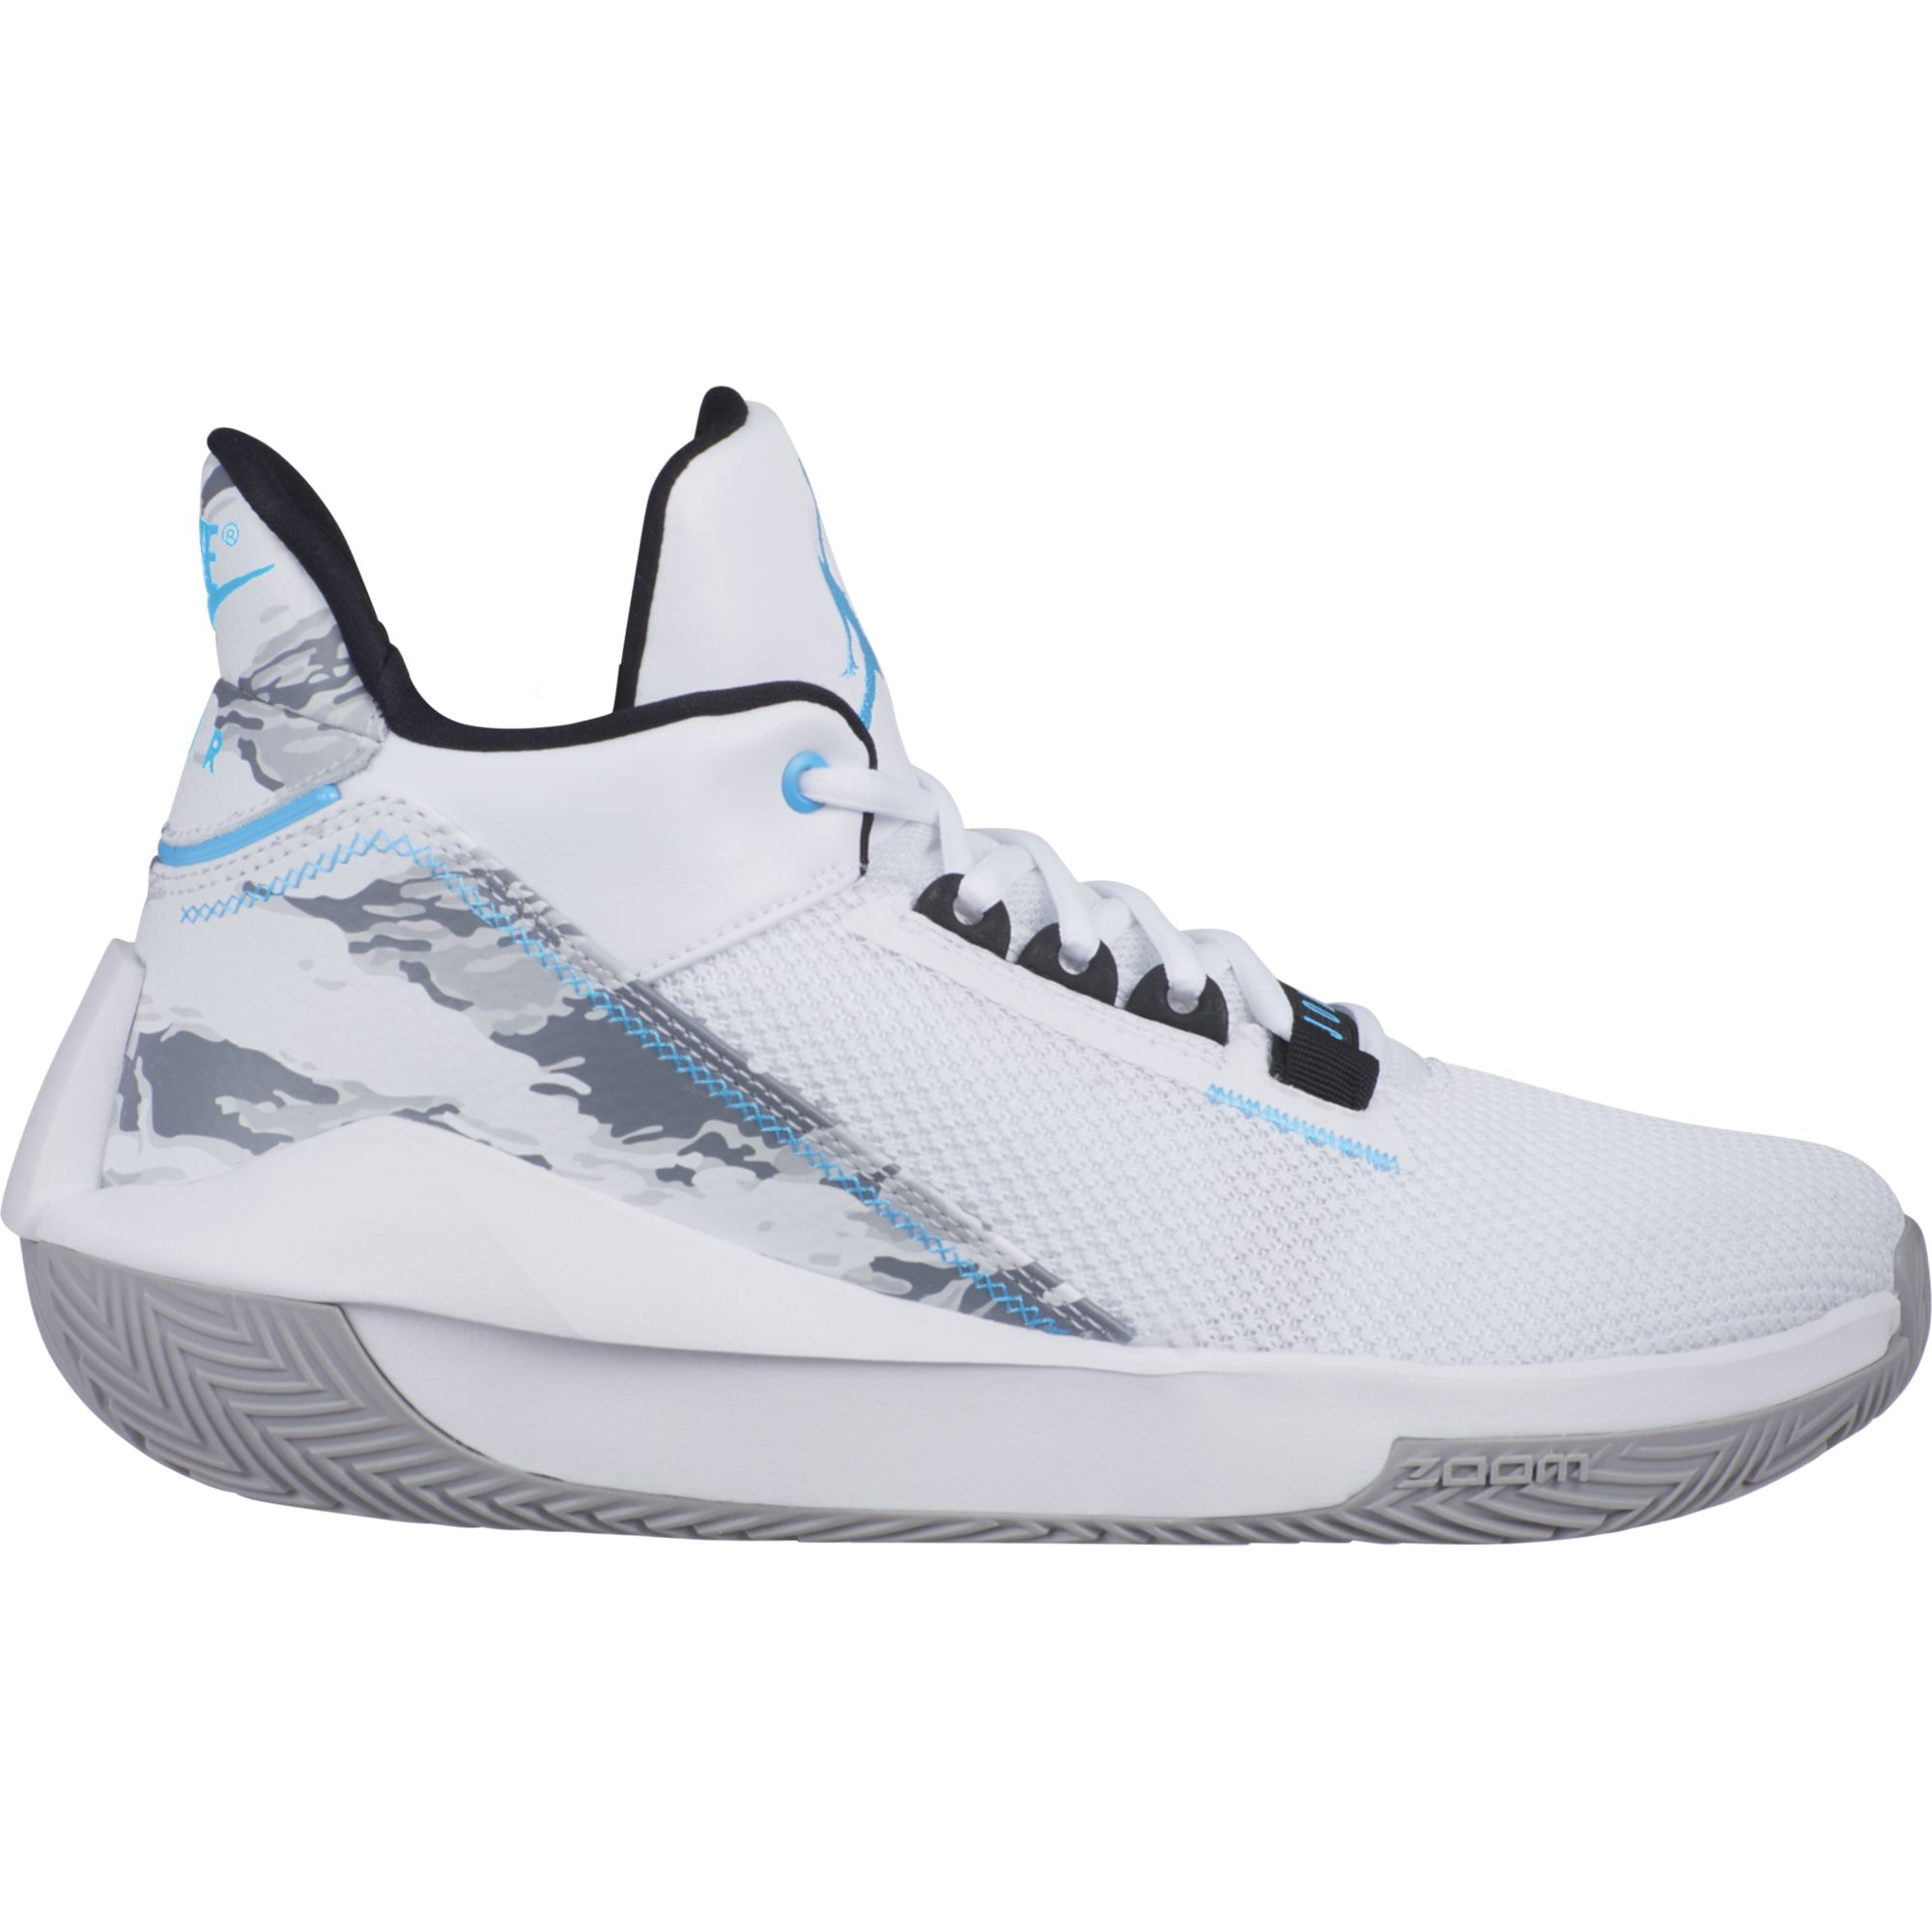 Баскетбольные кроссовки Jordan 2x3 - картинка